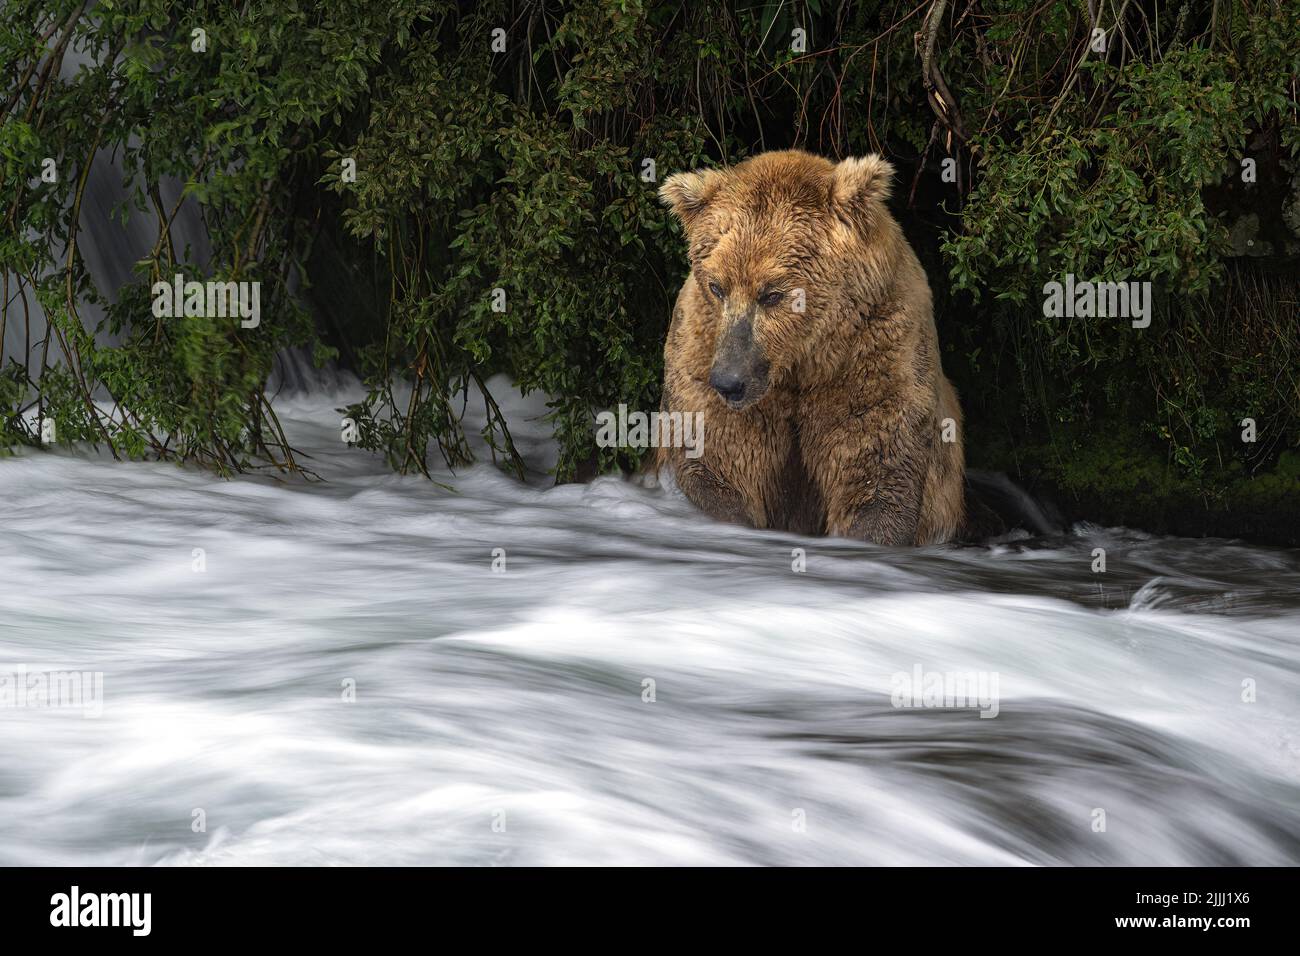 Brown bear Otis in river long exposure Stock Photo